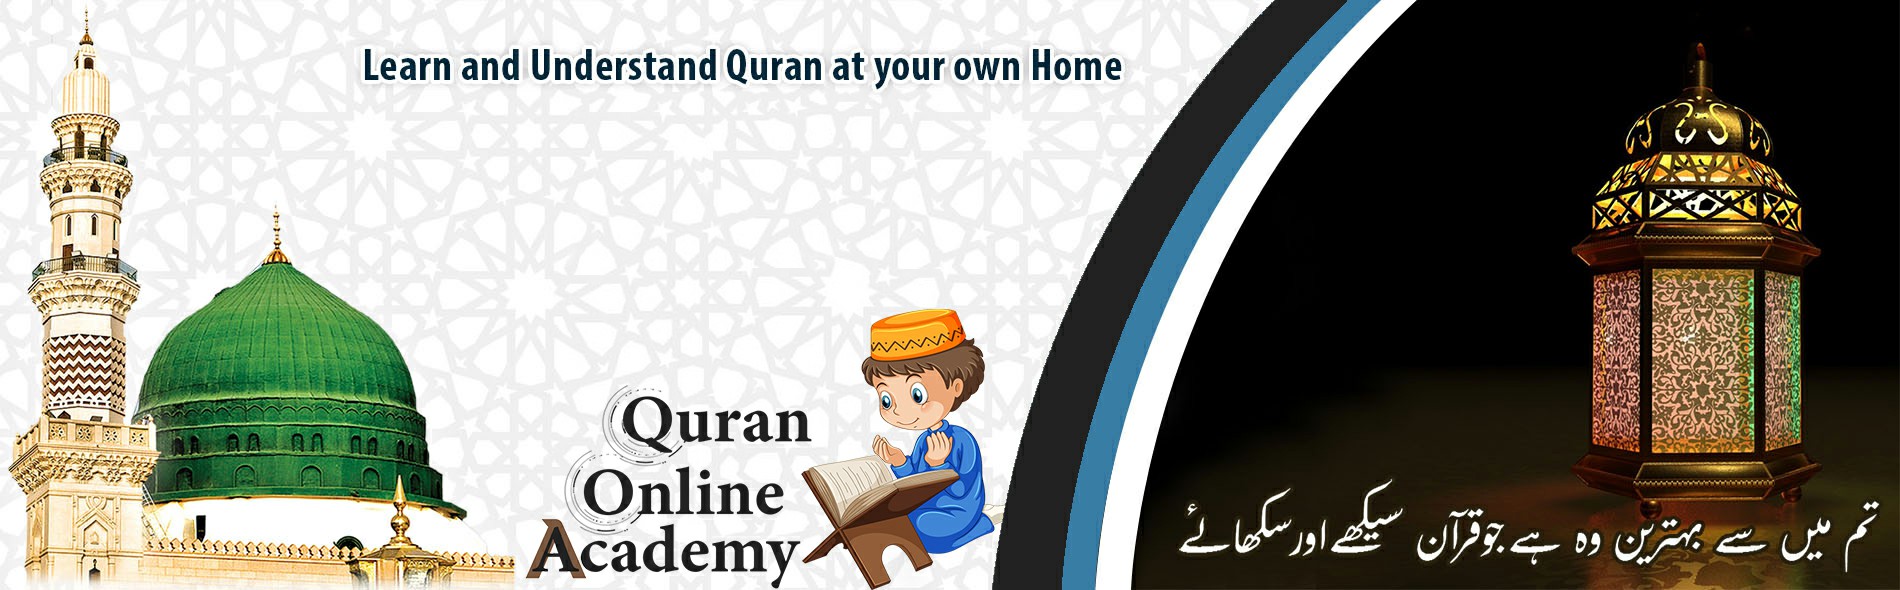 Al Quran Online Academy AMERICA